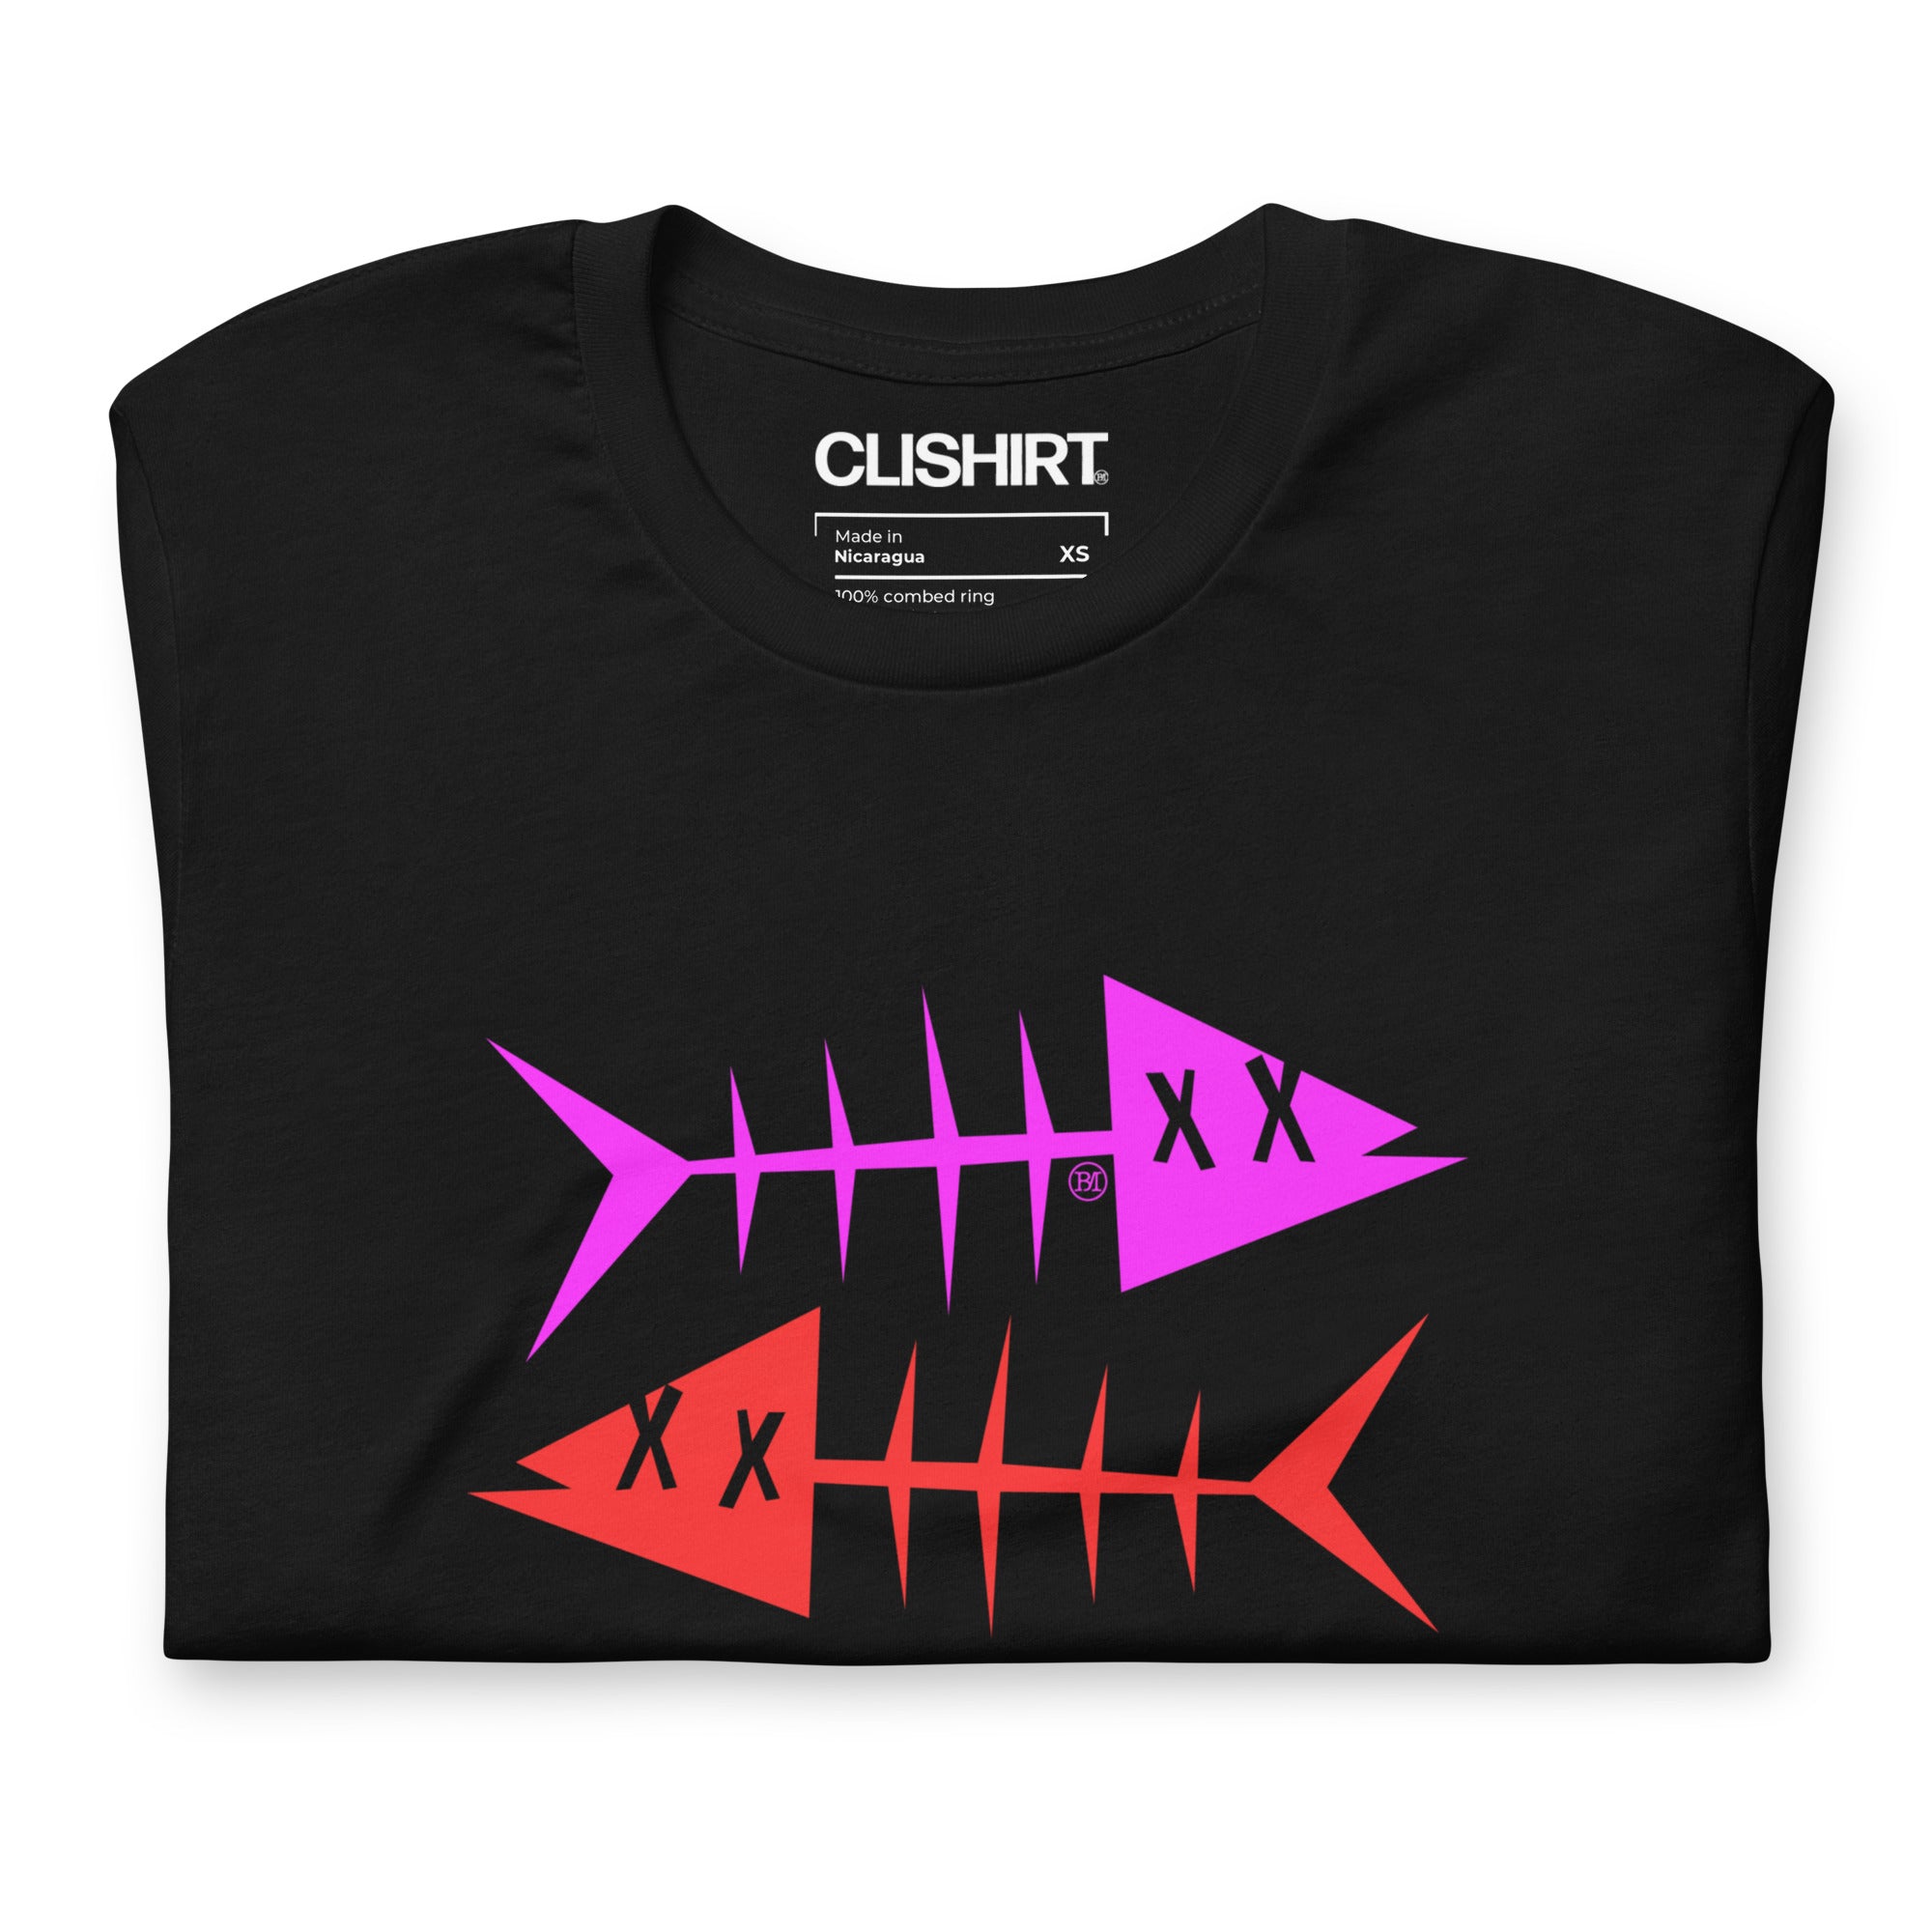 Clishirt© Magenta Fish Red Fish Black Unisex t-shirt